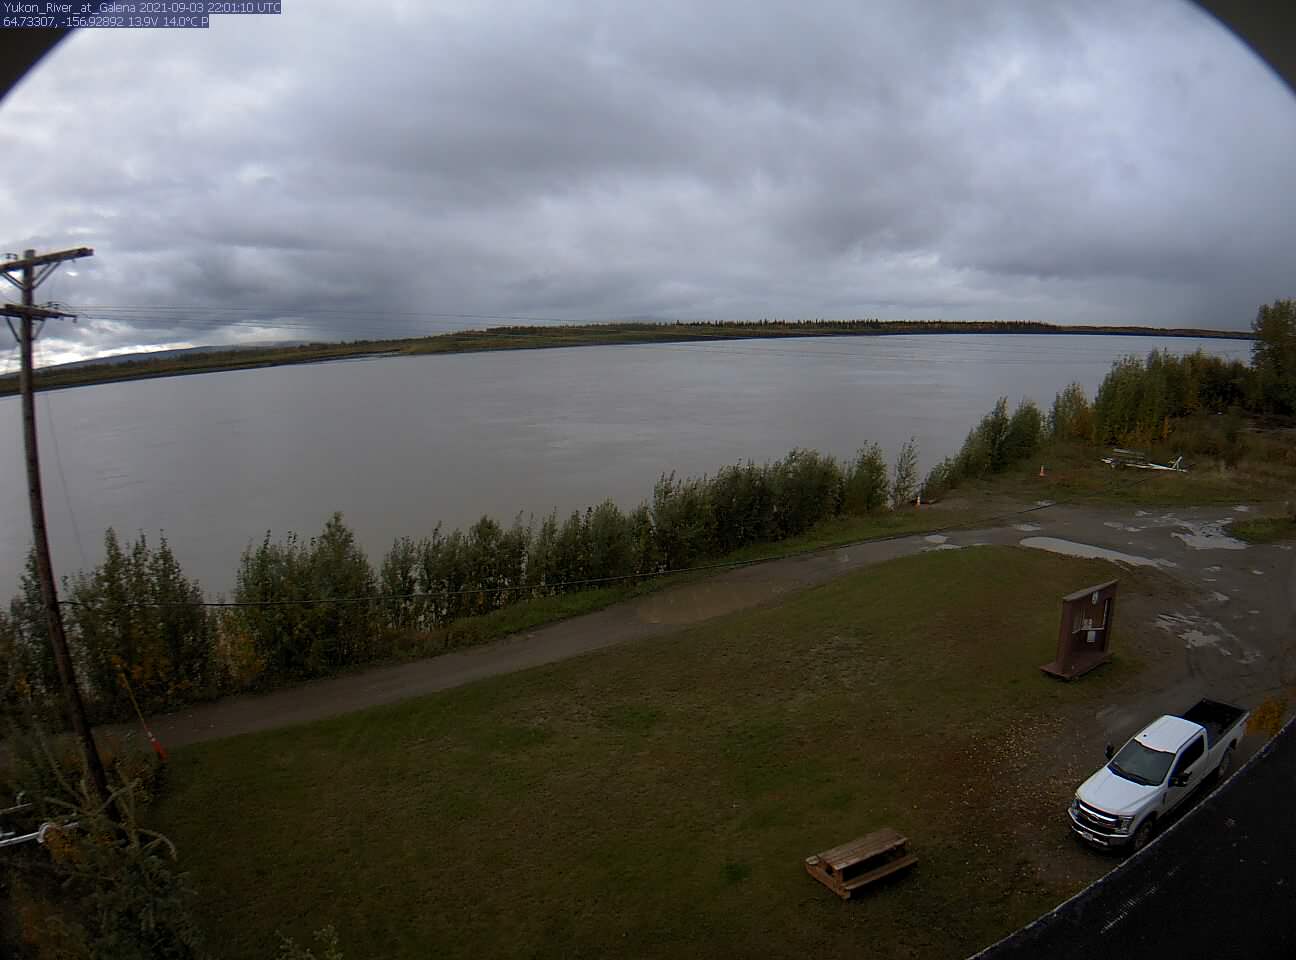 Yukon_River_at_Galena_20210903220111.jpg